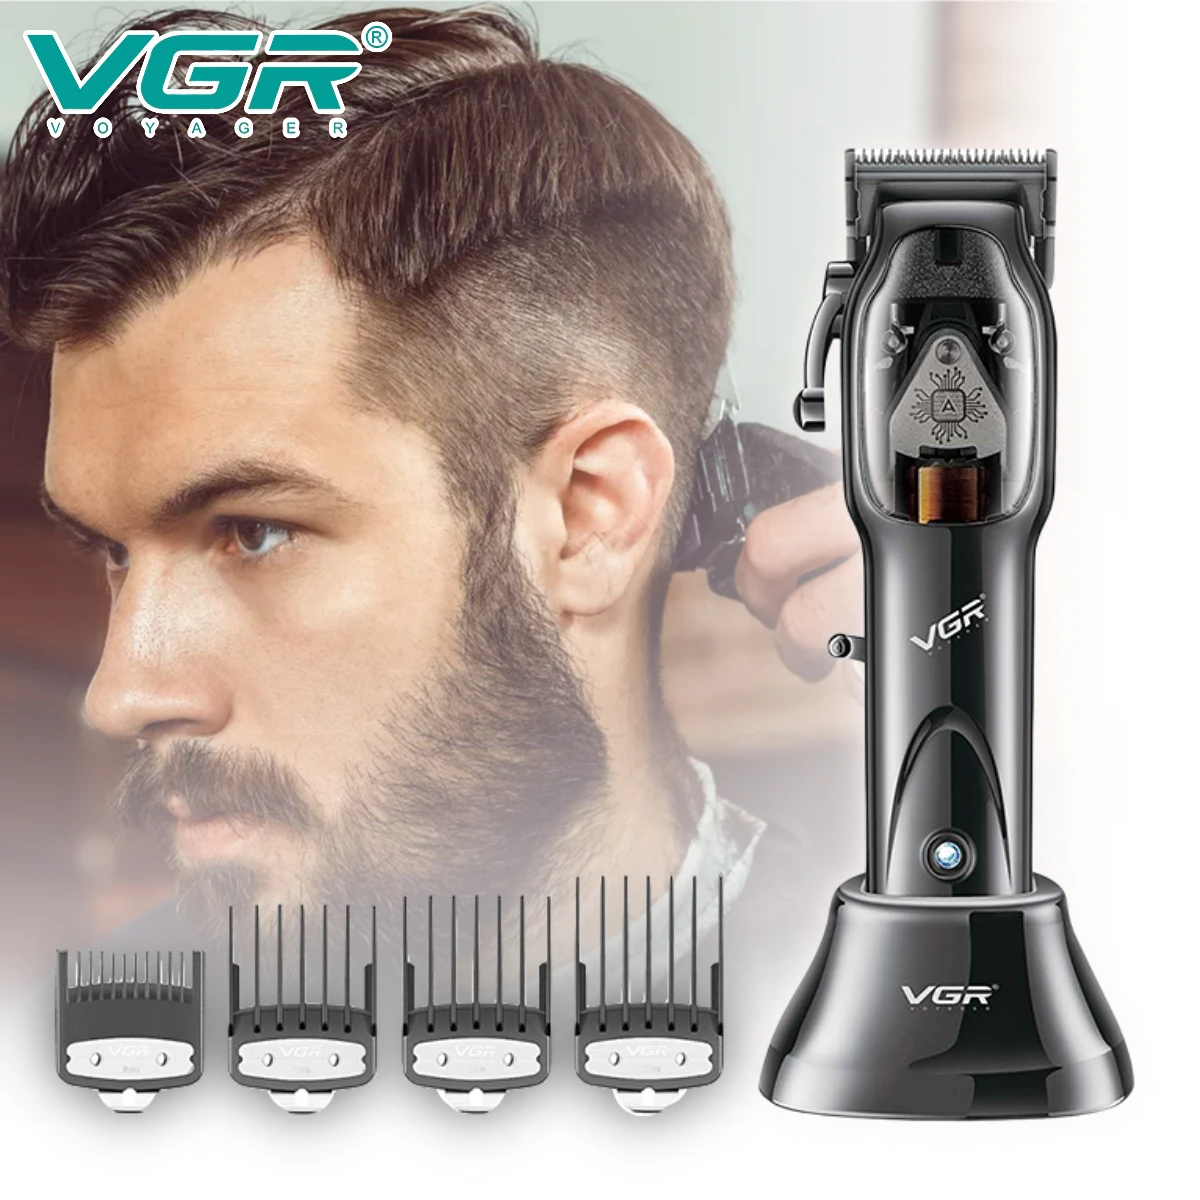 

VGR Hair Clipper Professional Hair Cutting Machine Cordless Hair Trimmer Electric Barber Haircut Machine Trimmer for Men V-653